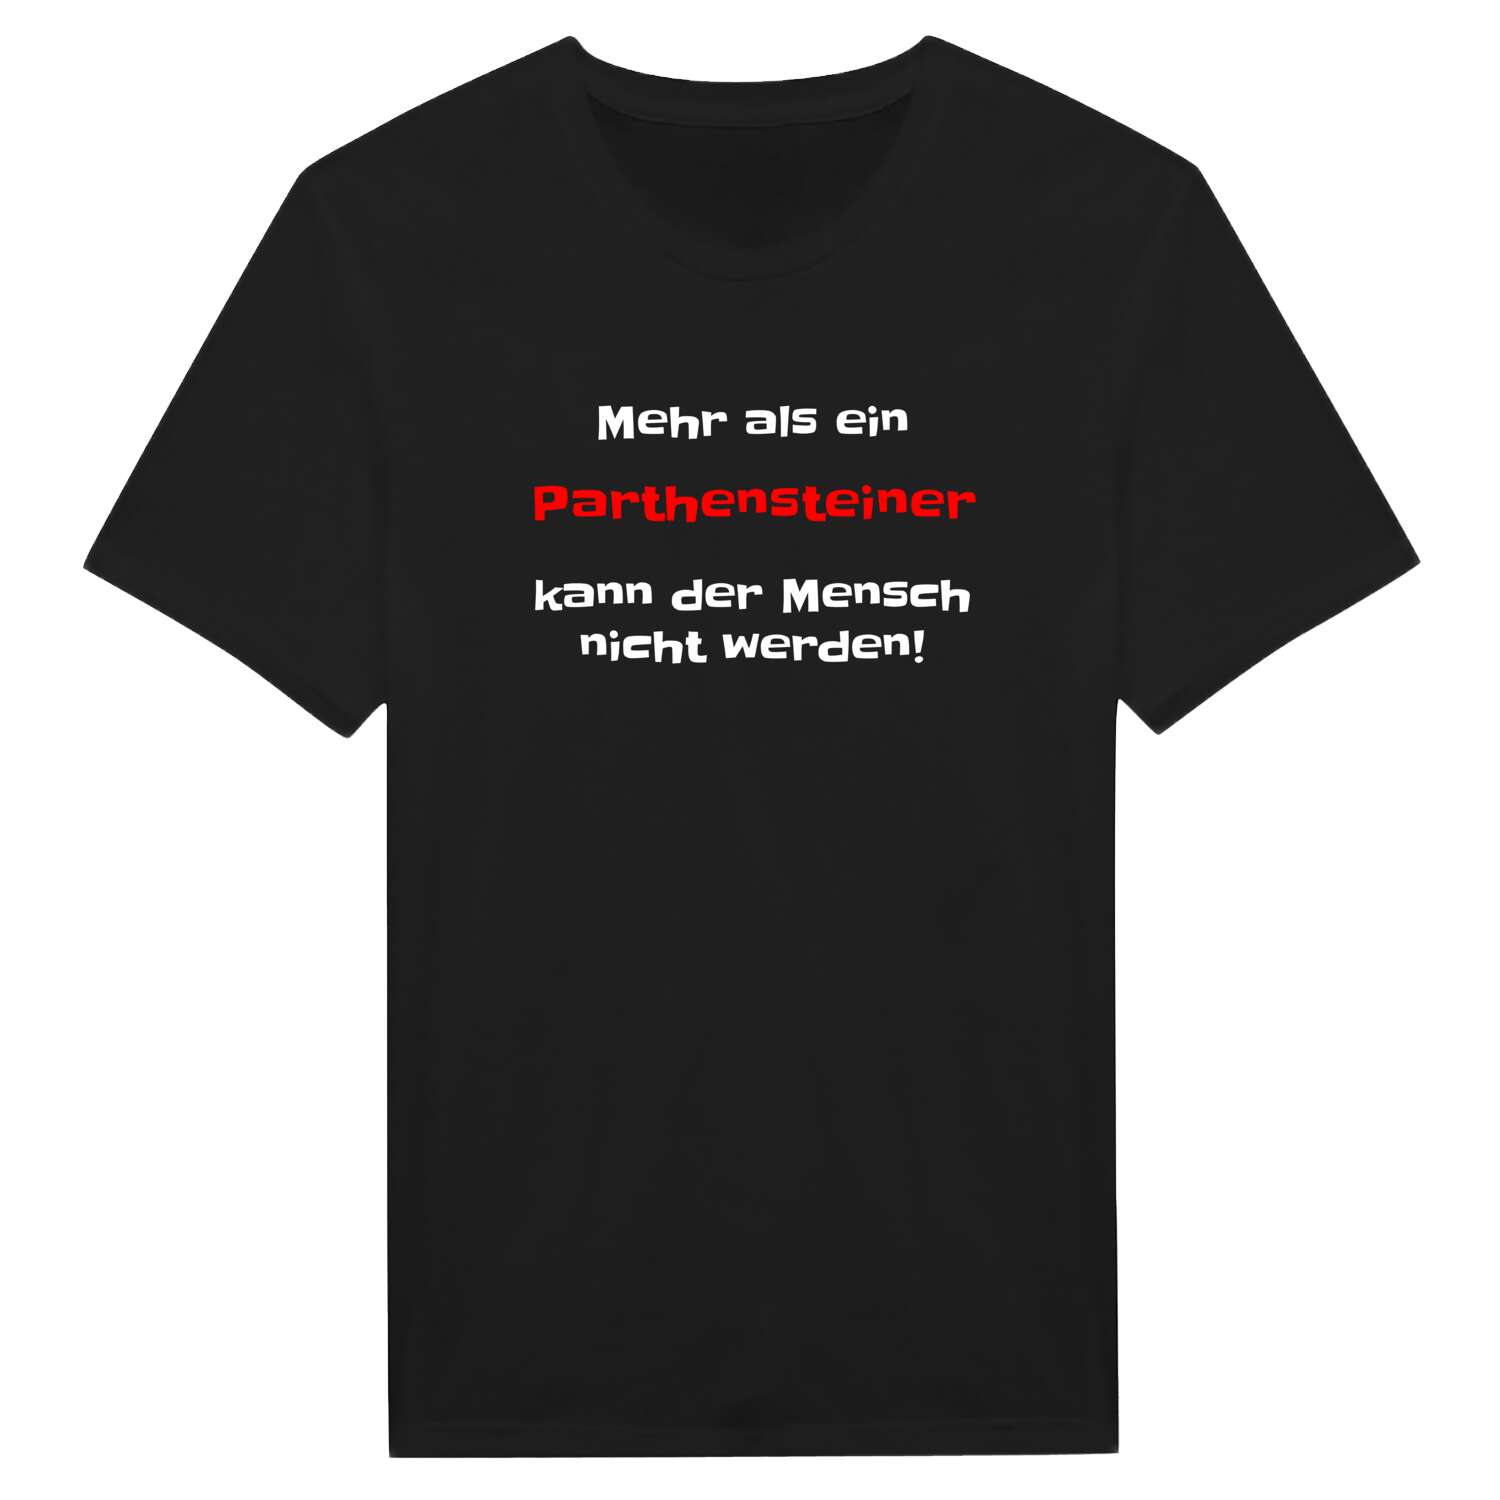 Parthenstein T-Shirt »Mehr als ein«